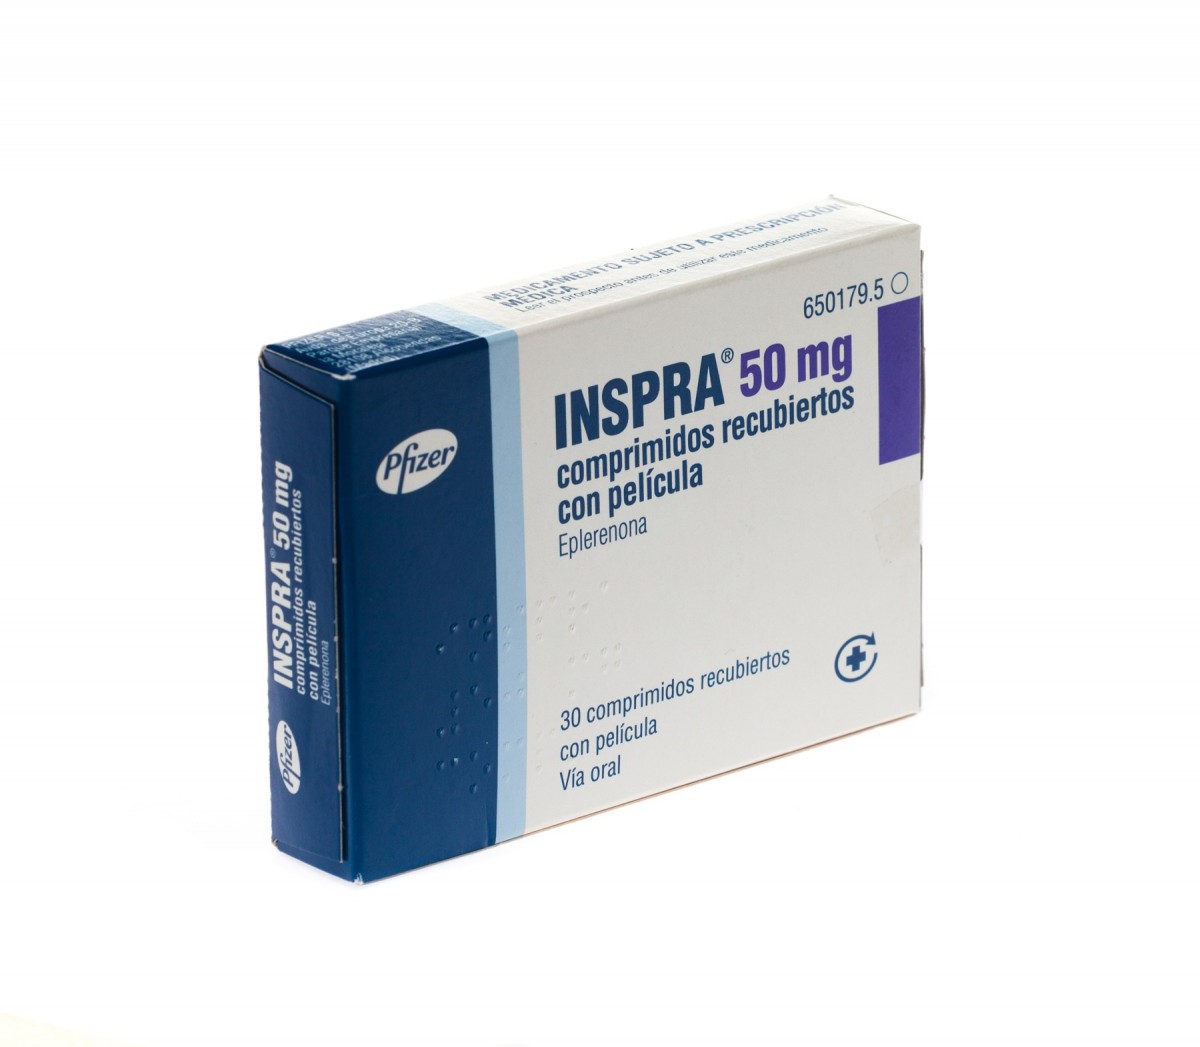 INSPRA 50 mg COMPRIMIDOS RECUBIERTOS CON PELICULA , 30 comprimidos fotografía del envase.